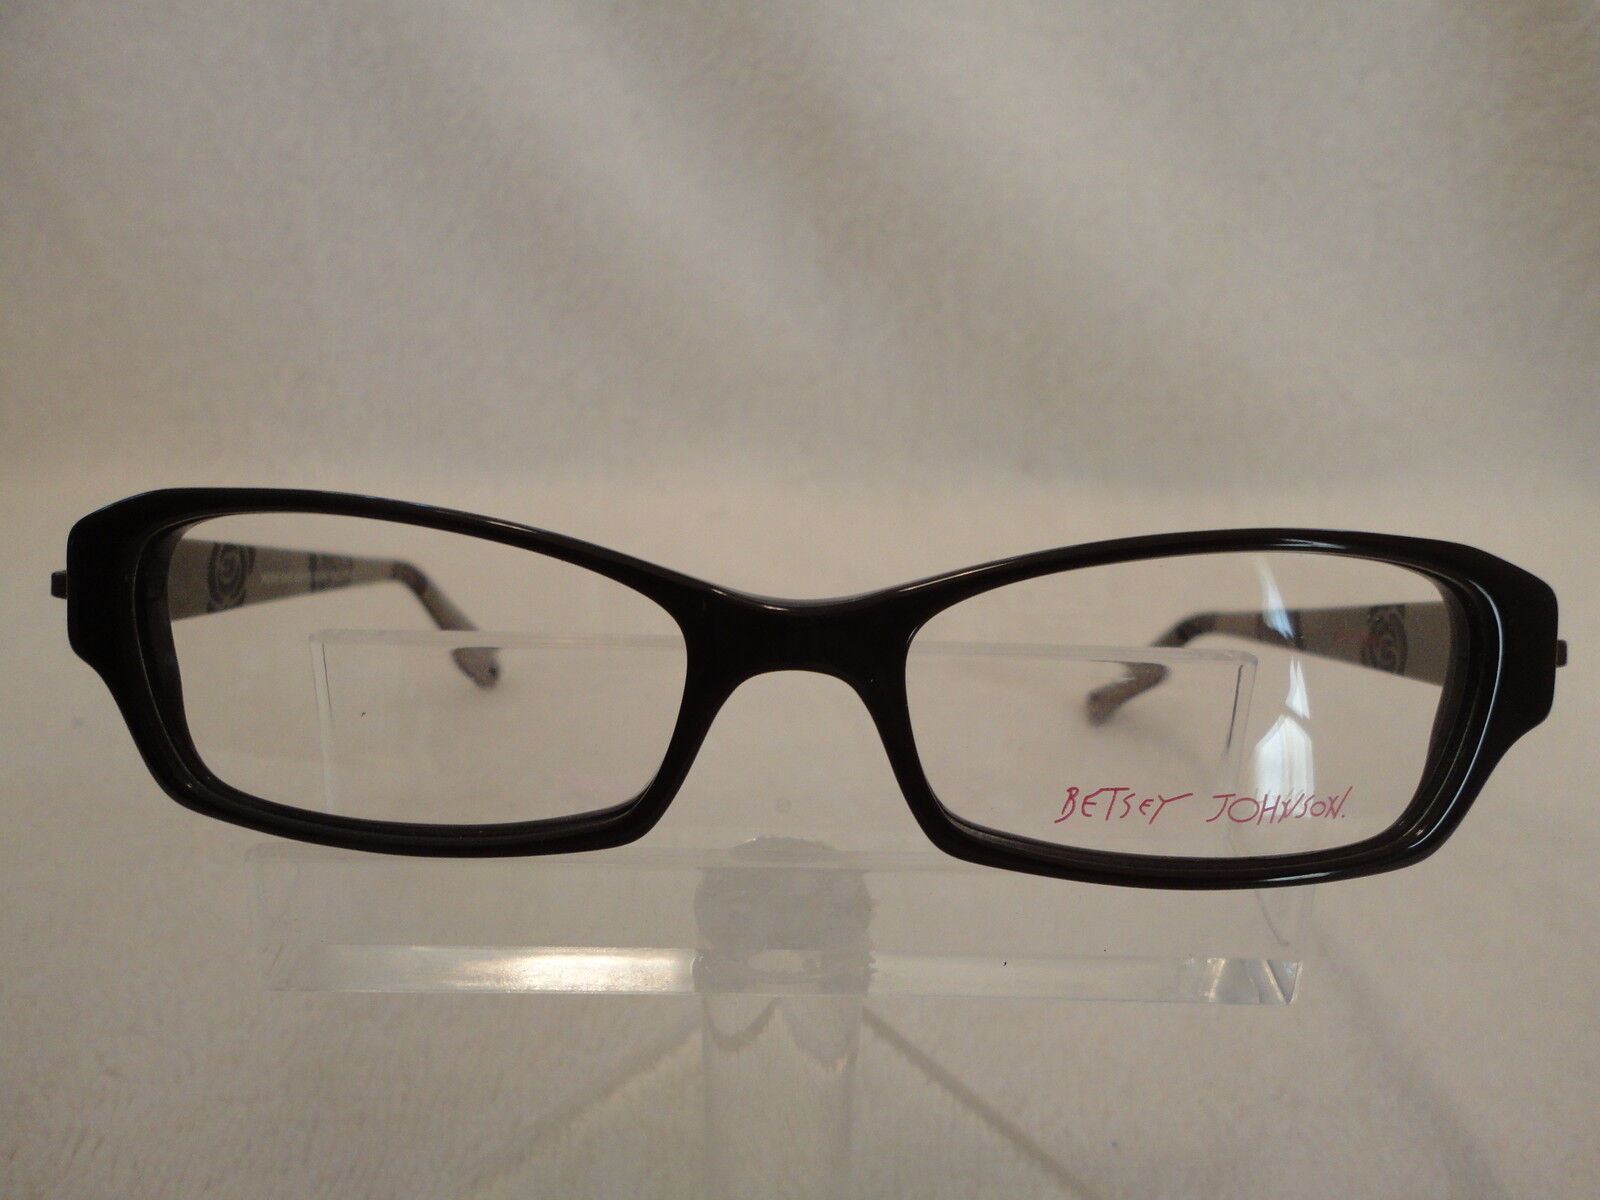 Betsey Johnson 105 Espresso 51 X 16 135 Eyeglass Frame Glasses